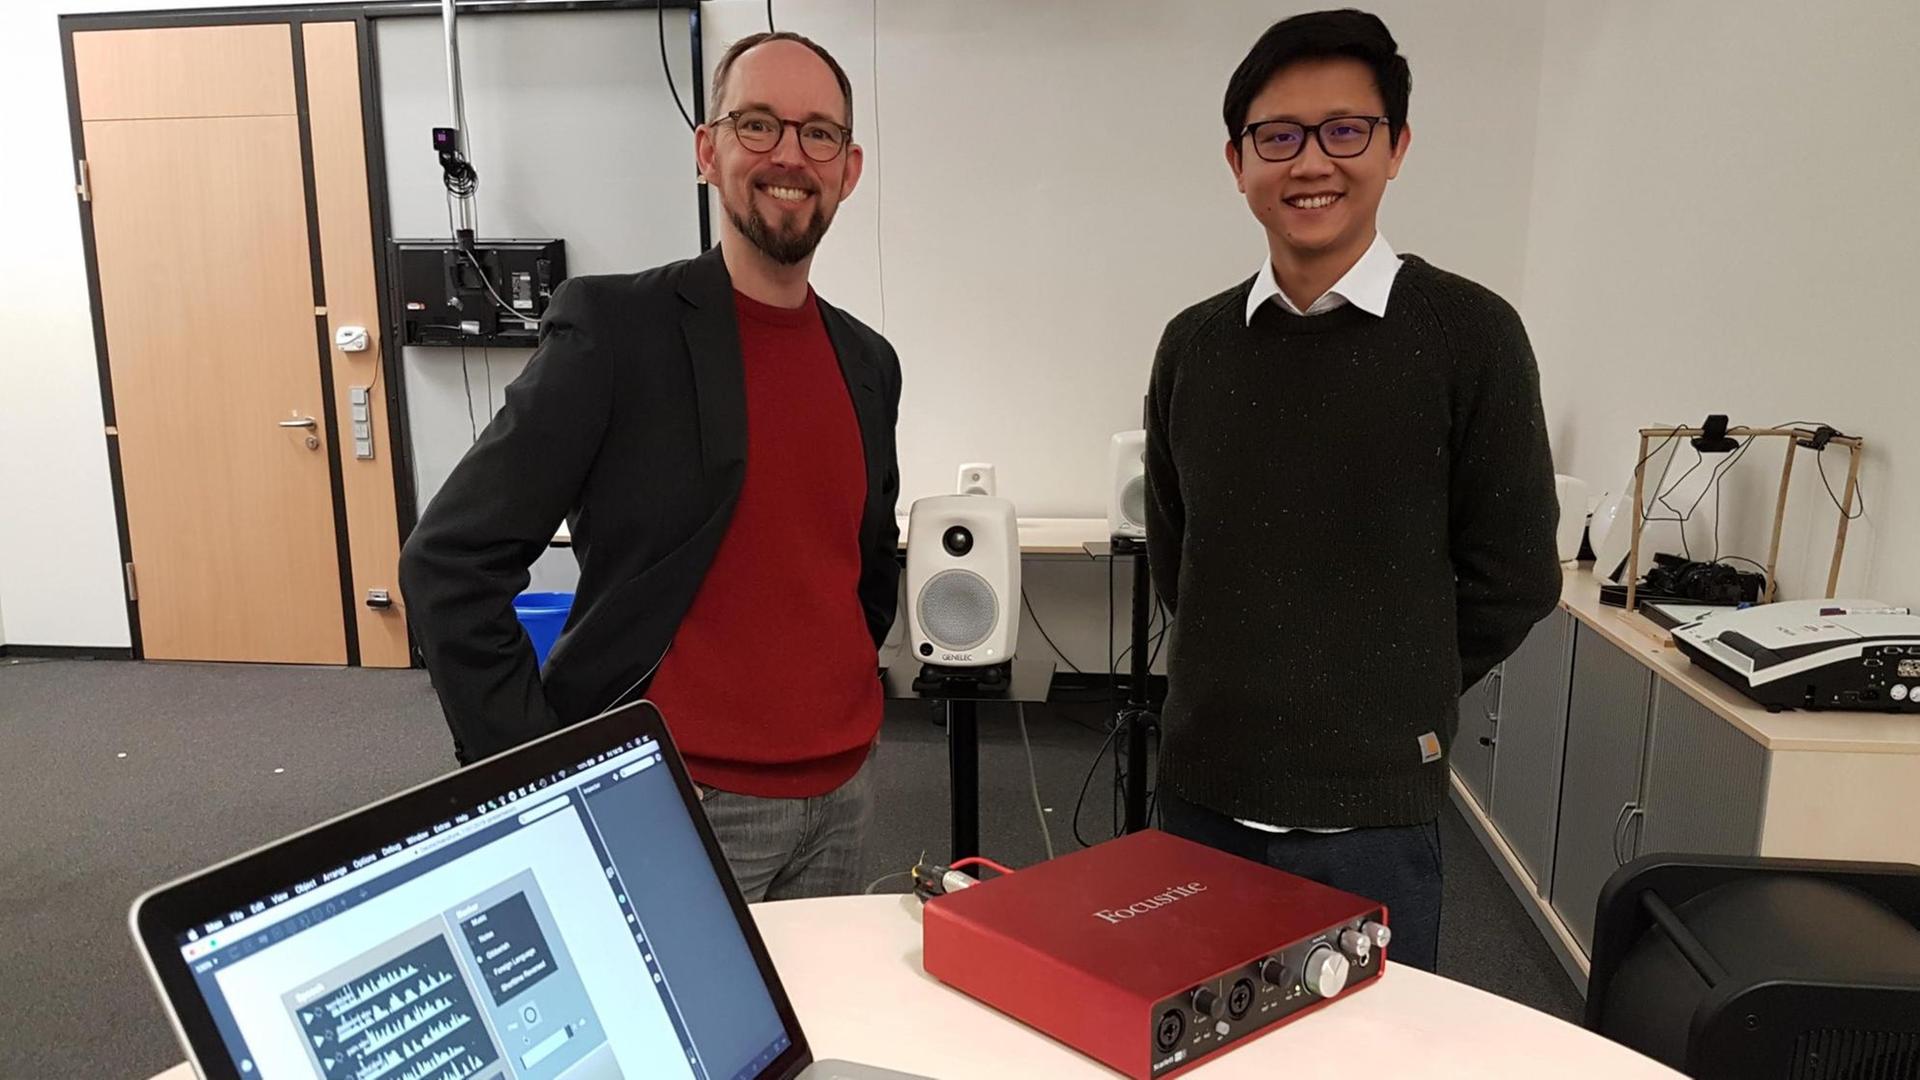 Die Bielefelder Forscher Thomas Hermann und Jiajun Yang stehen nebeneinander in der Mitte eines Arbeitsraumes, im Vordergrund ein Tisch mit einem aufgeklappten Laptop